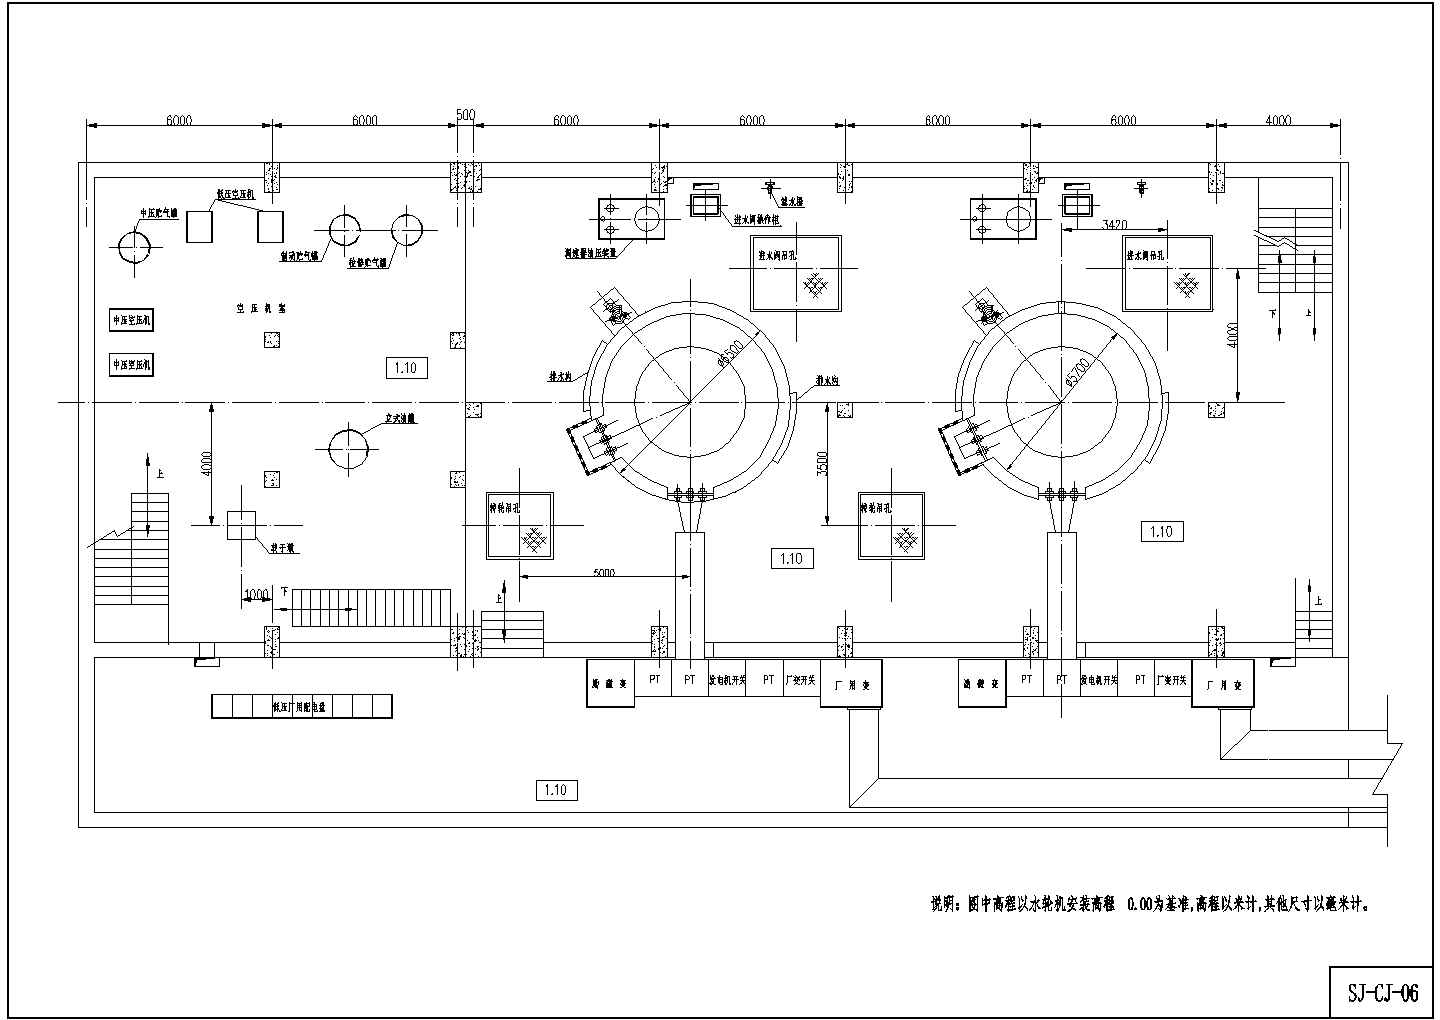 装机容量2x13000kw斜击式厂房结构布置图